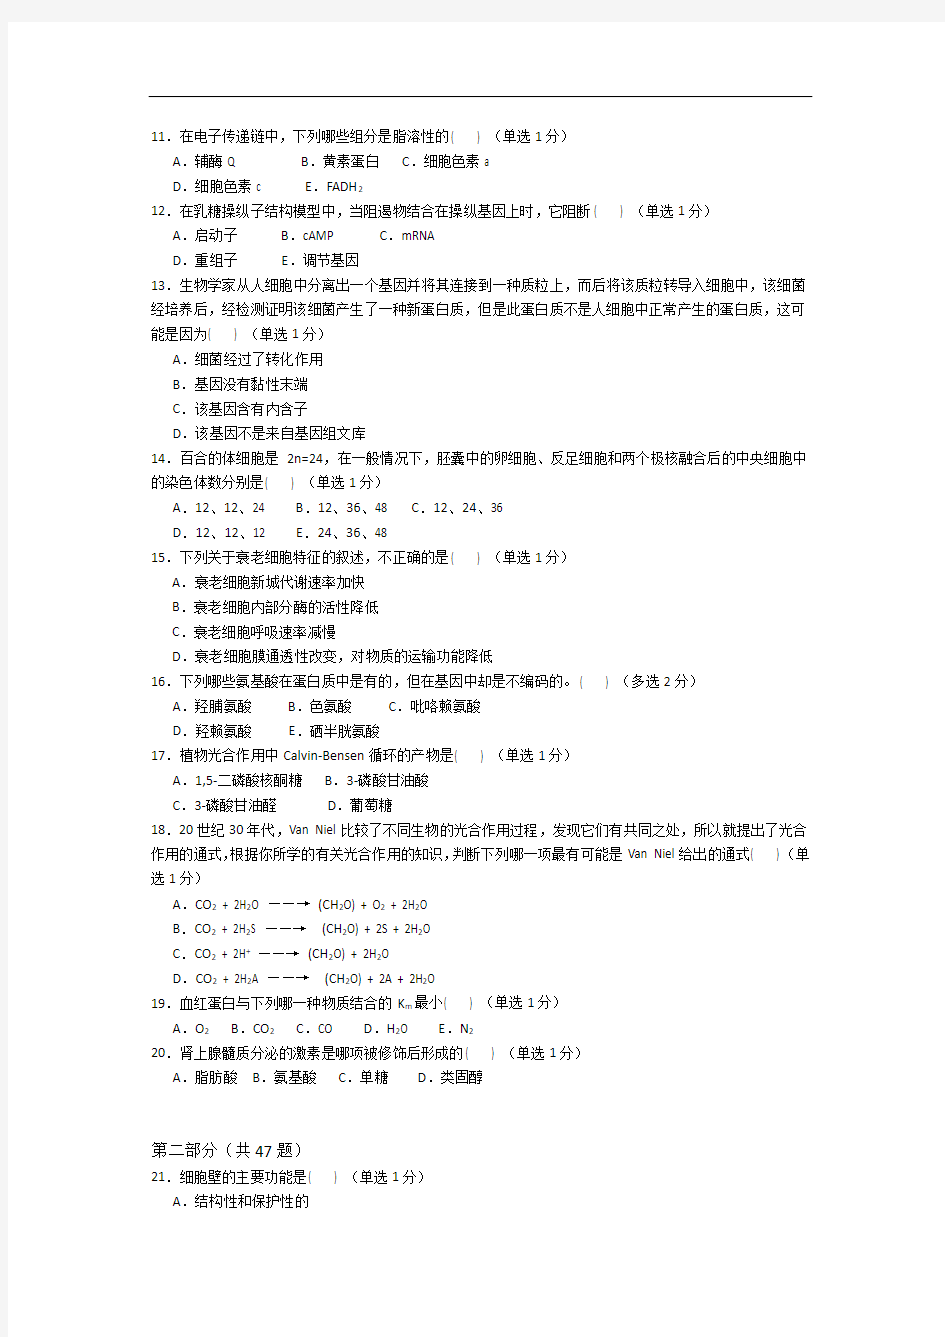 清北学堂2013年五一生物竞赛模拟押题试卷2(鲁昊骋)汇总教材